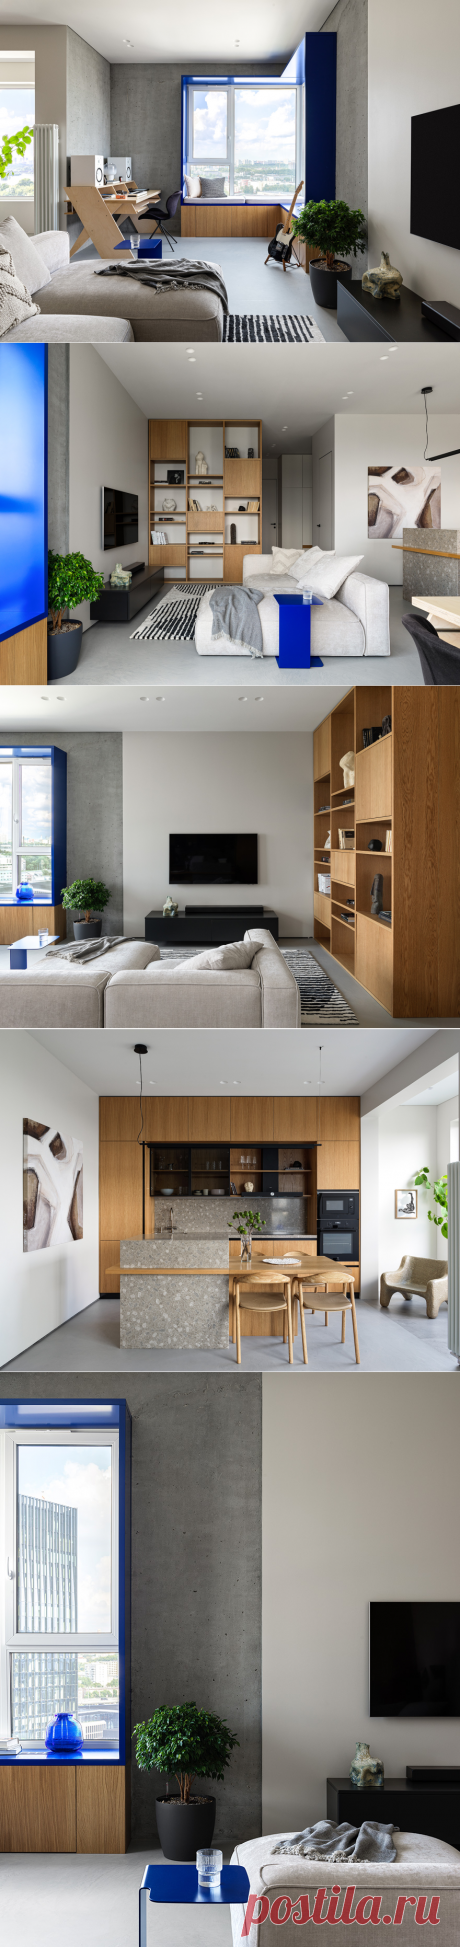 Shilova Studio: дизайн квартиры квартира с синими акцентами